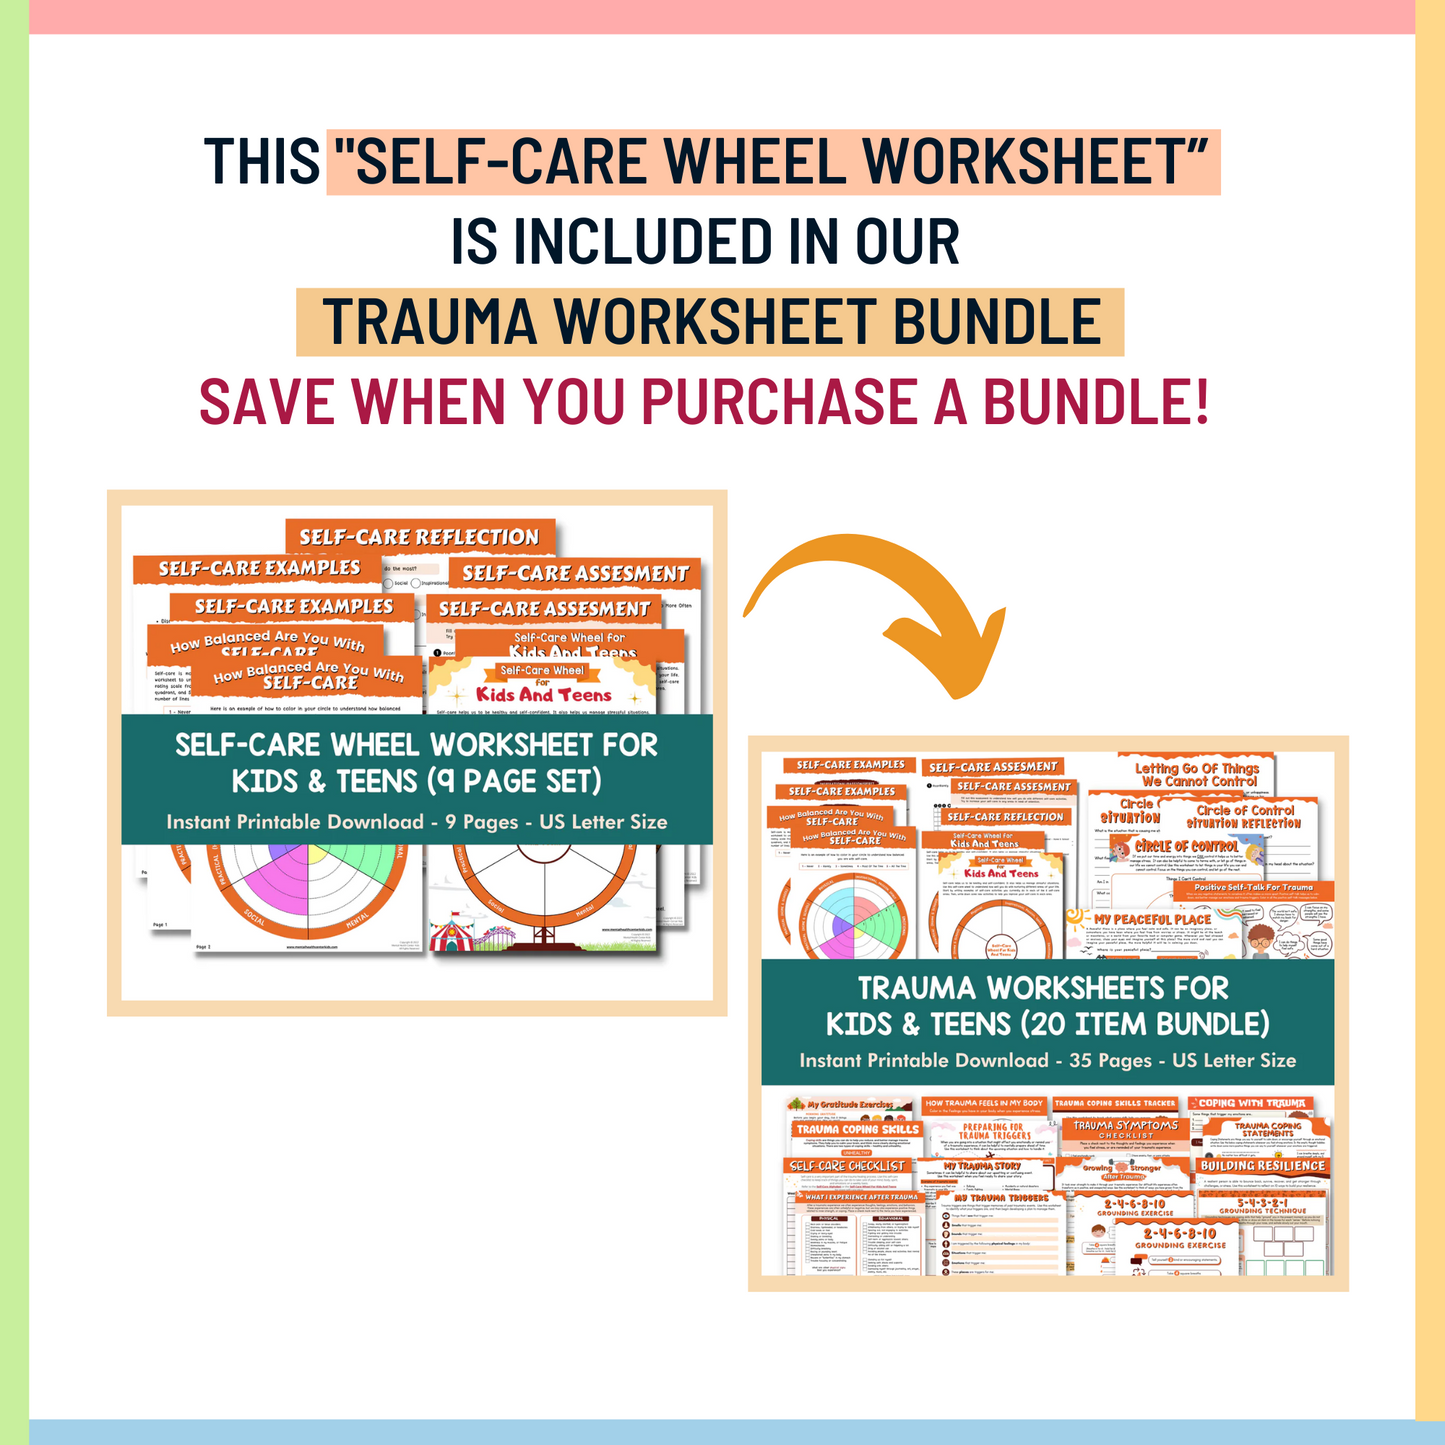 Self-Care Wheel Worksheet